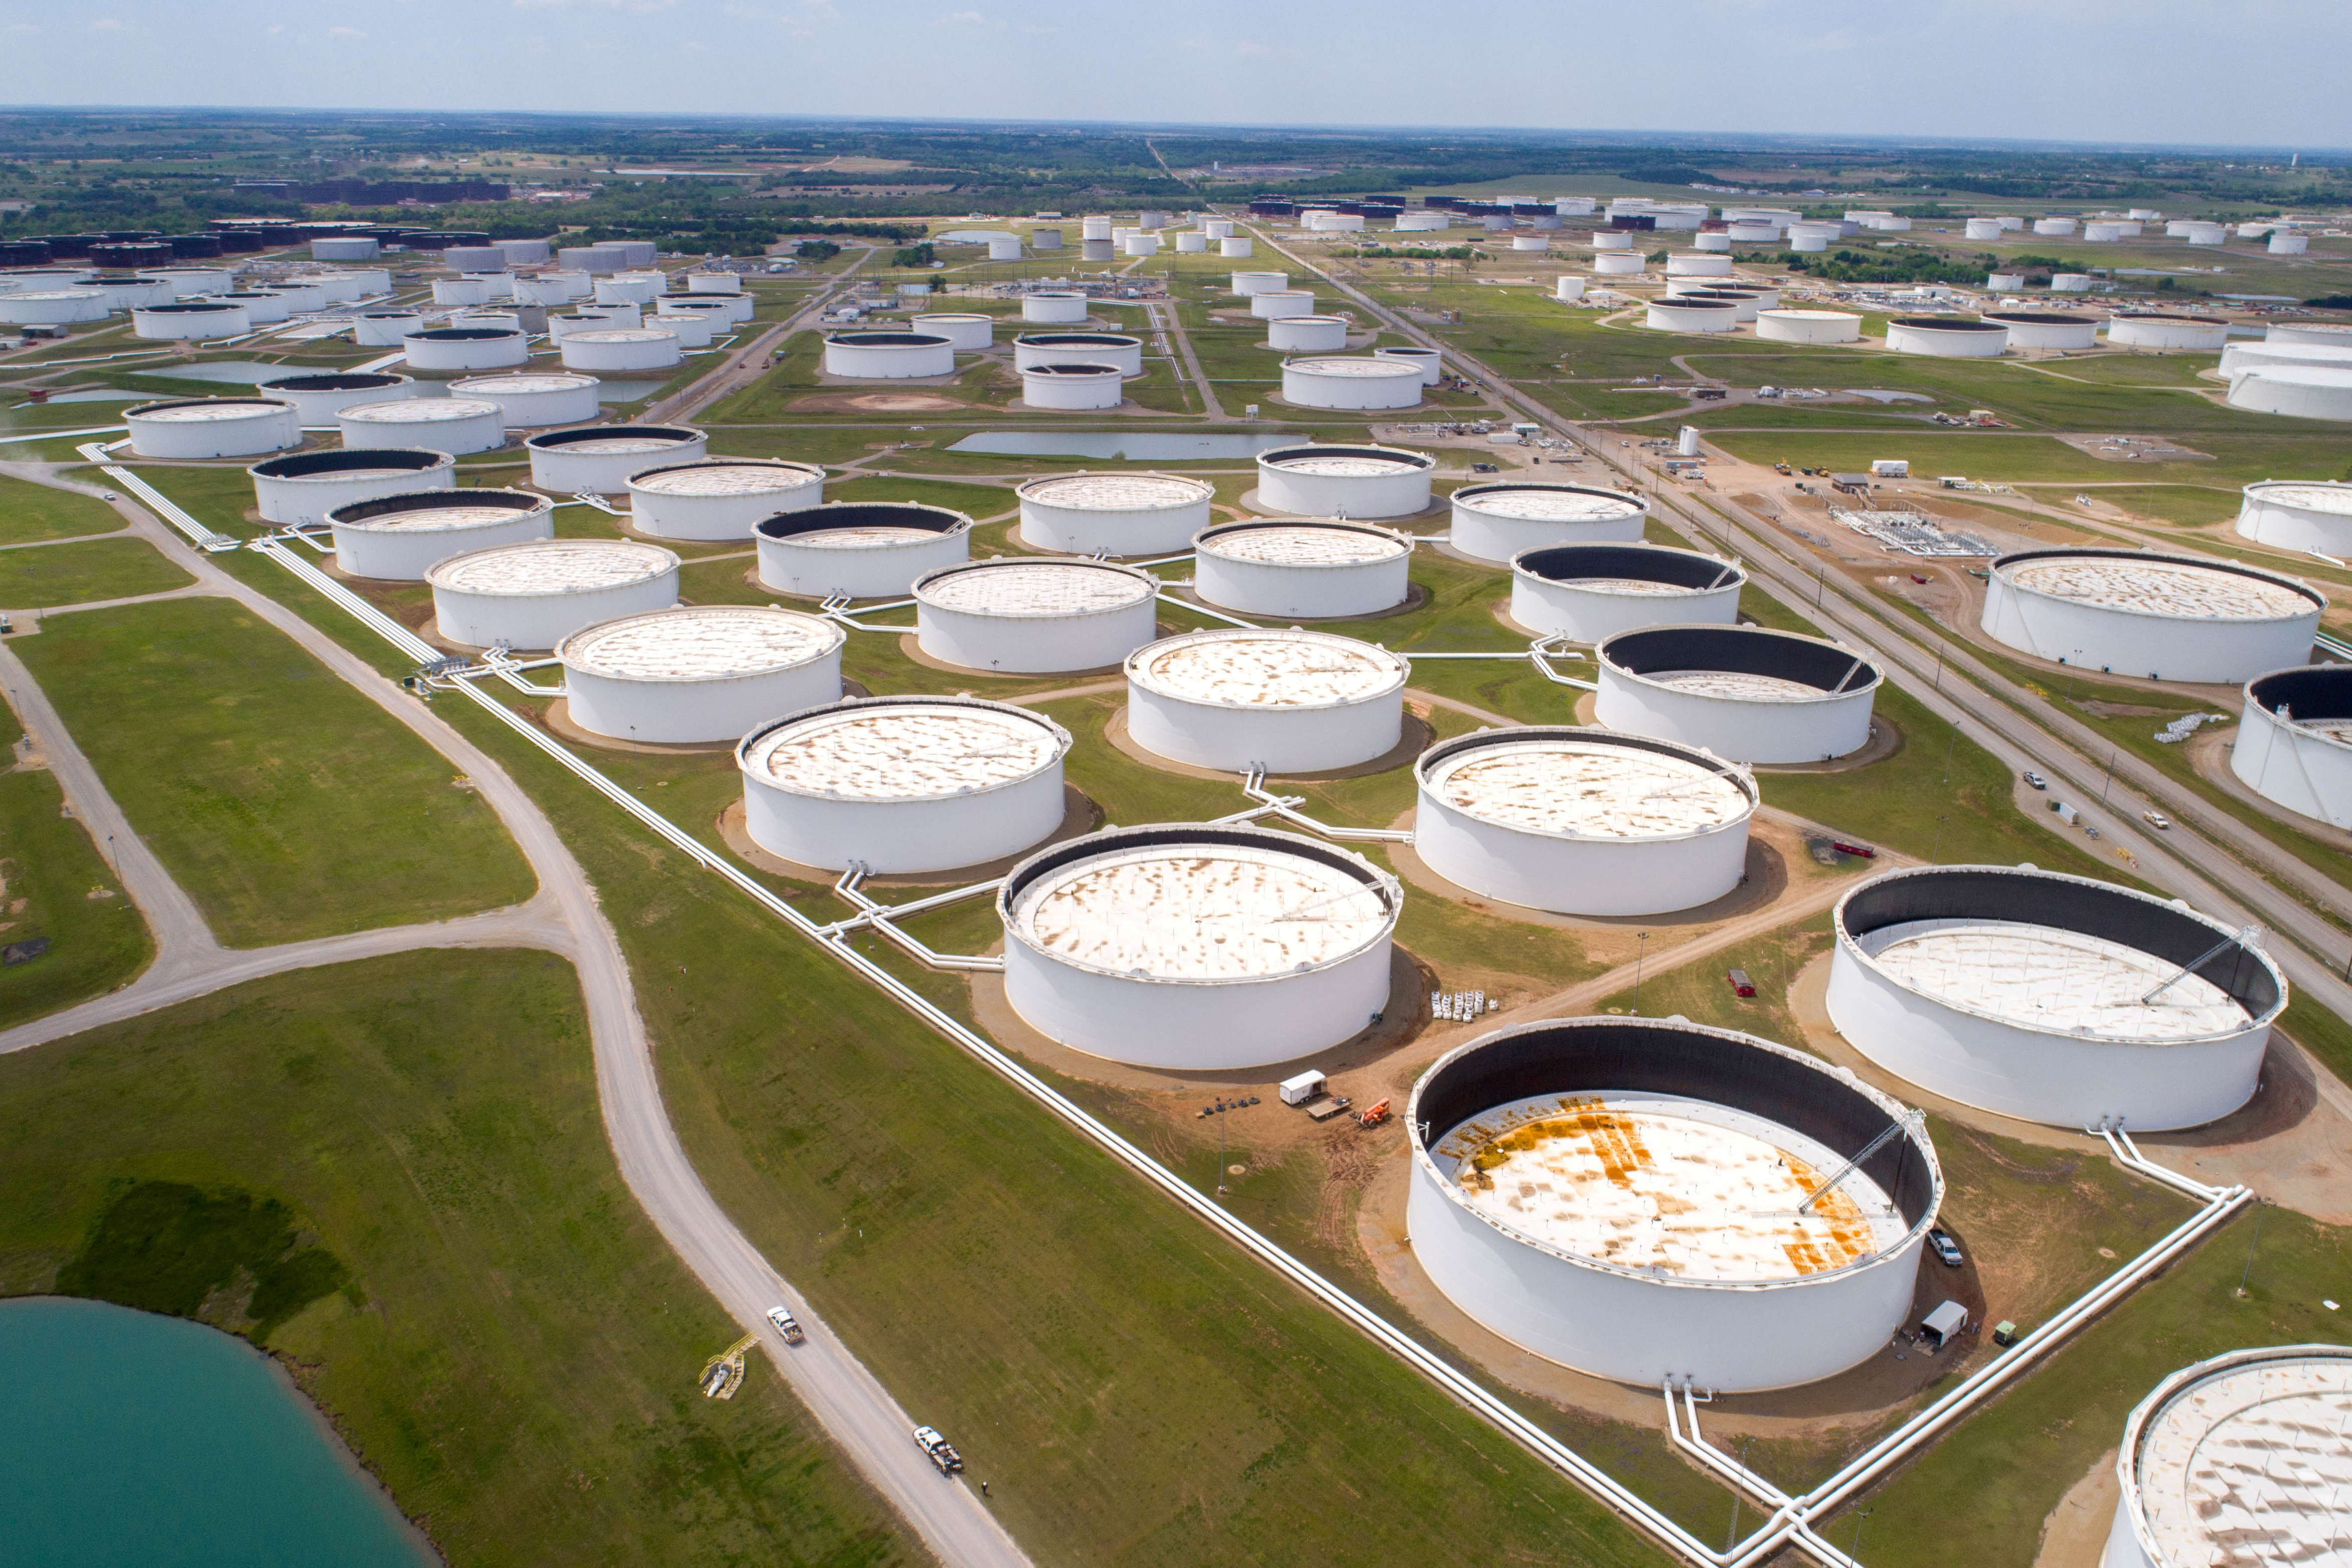 FOTO DE ARCHIVO: Los tanques de almacenamiento de crudo se ven en una fotografía aérea en el centro de petróleo de Cushing en Cushing, Oklahoma, EEUU (REUTERS / Drone Base /archivo)